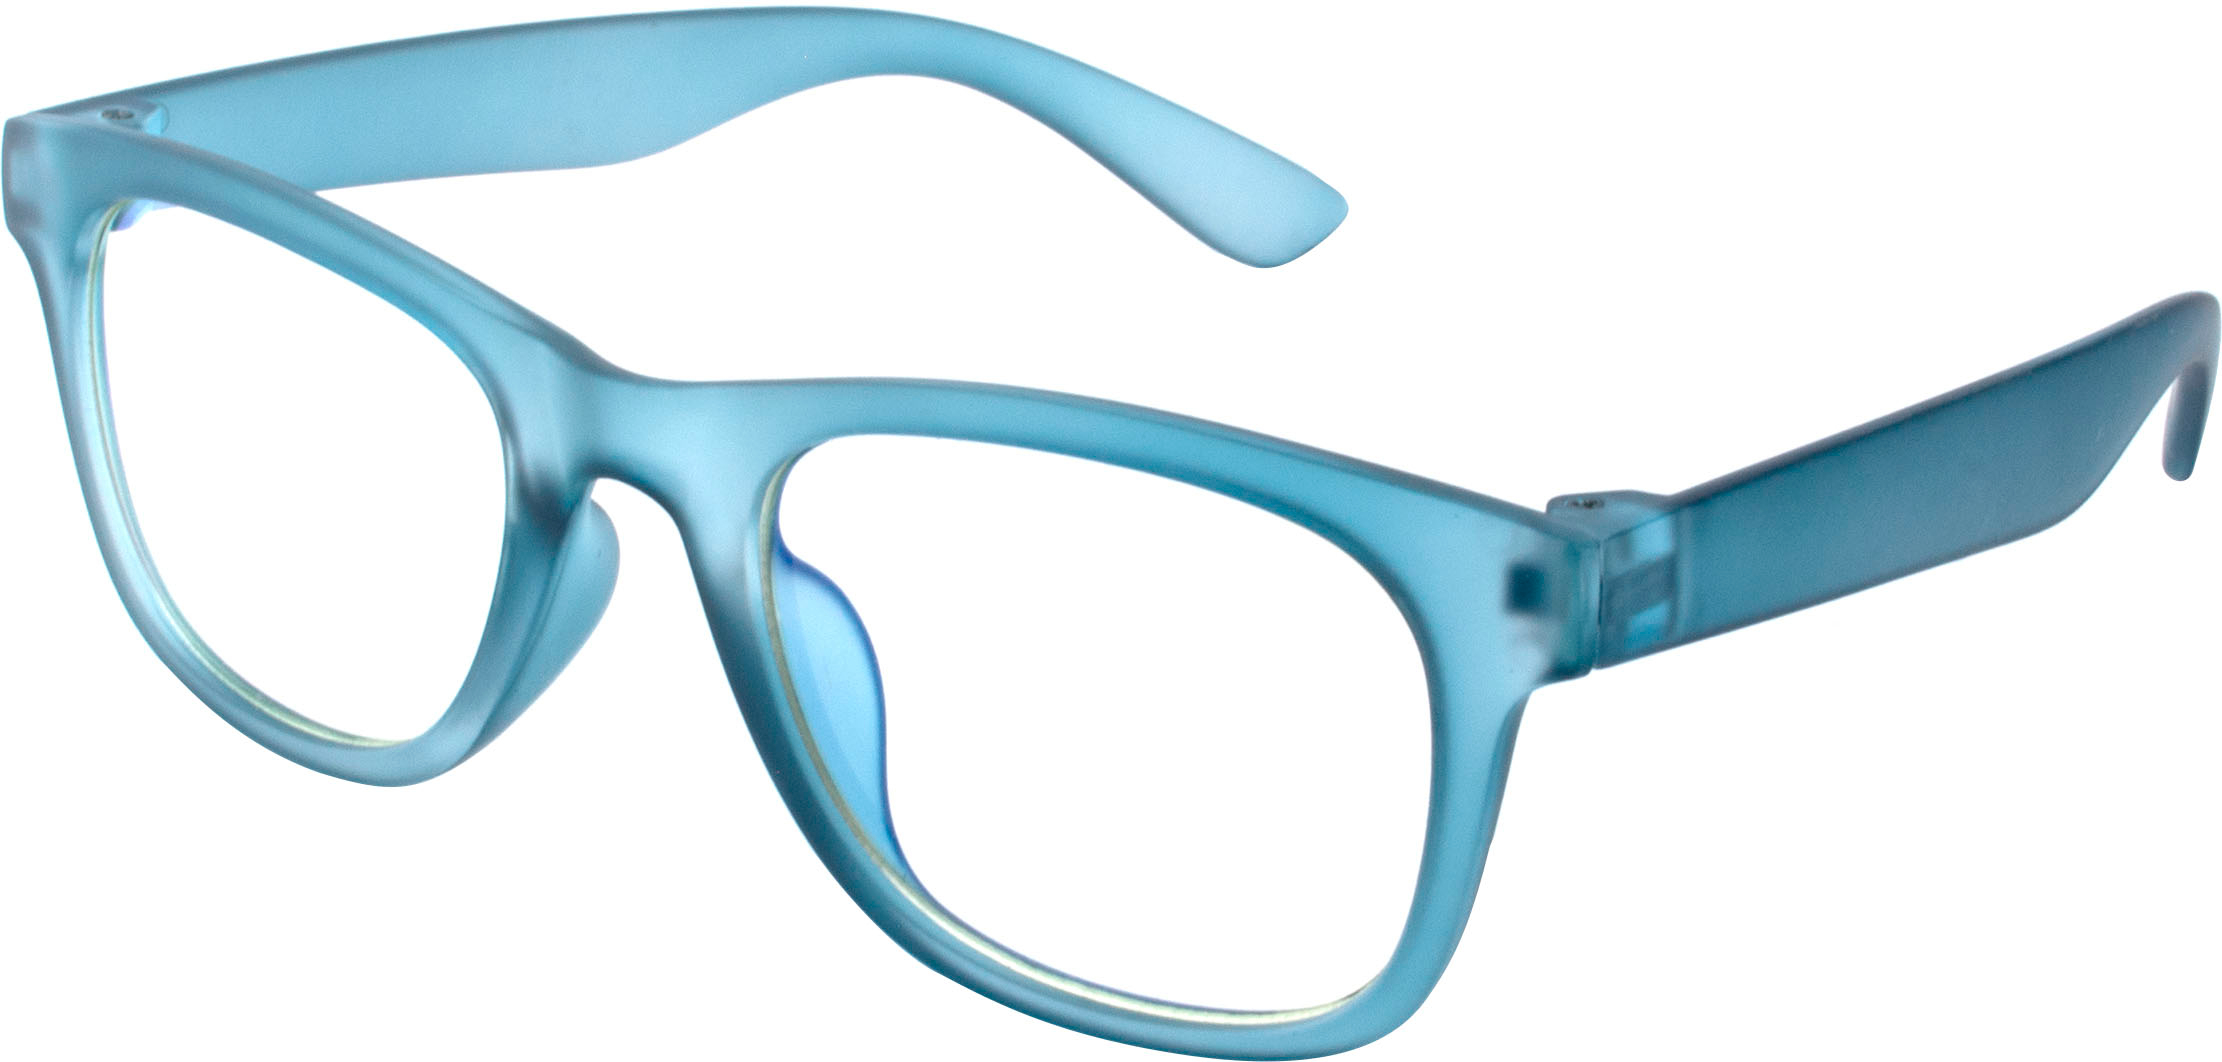 8 Best Blue-Light-Blocking Glasses for Kids